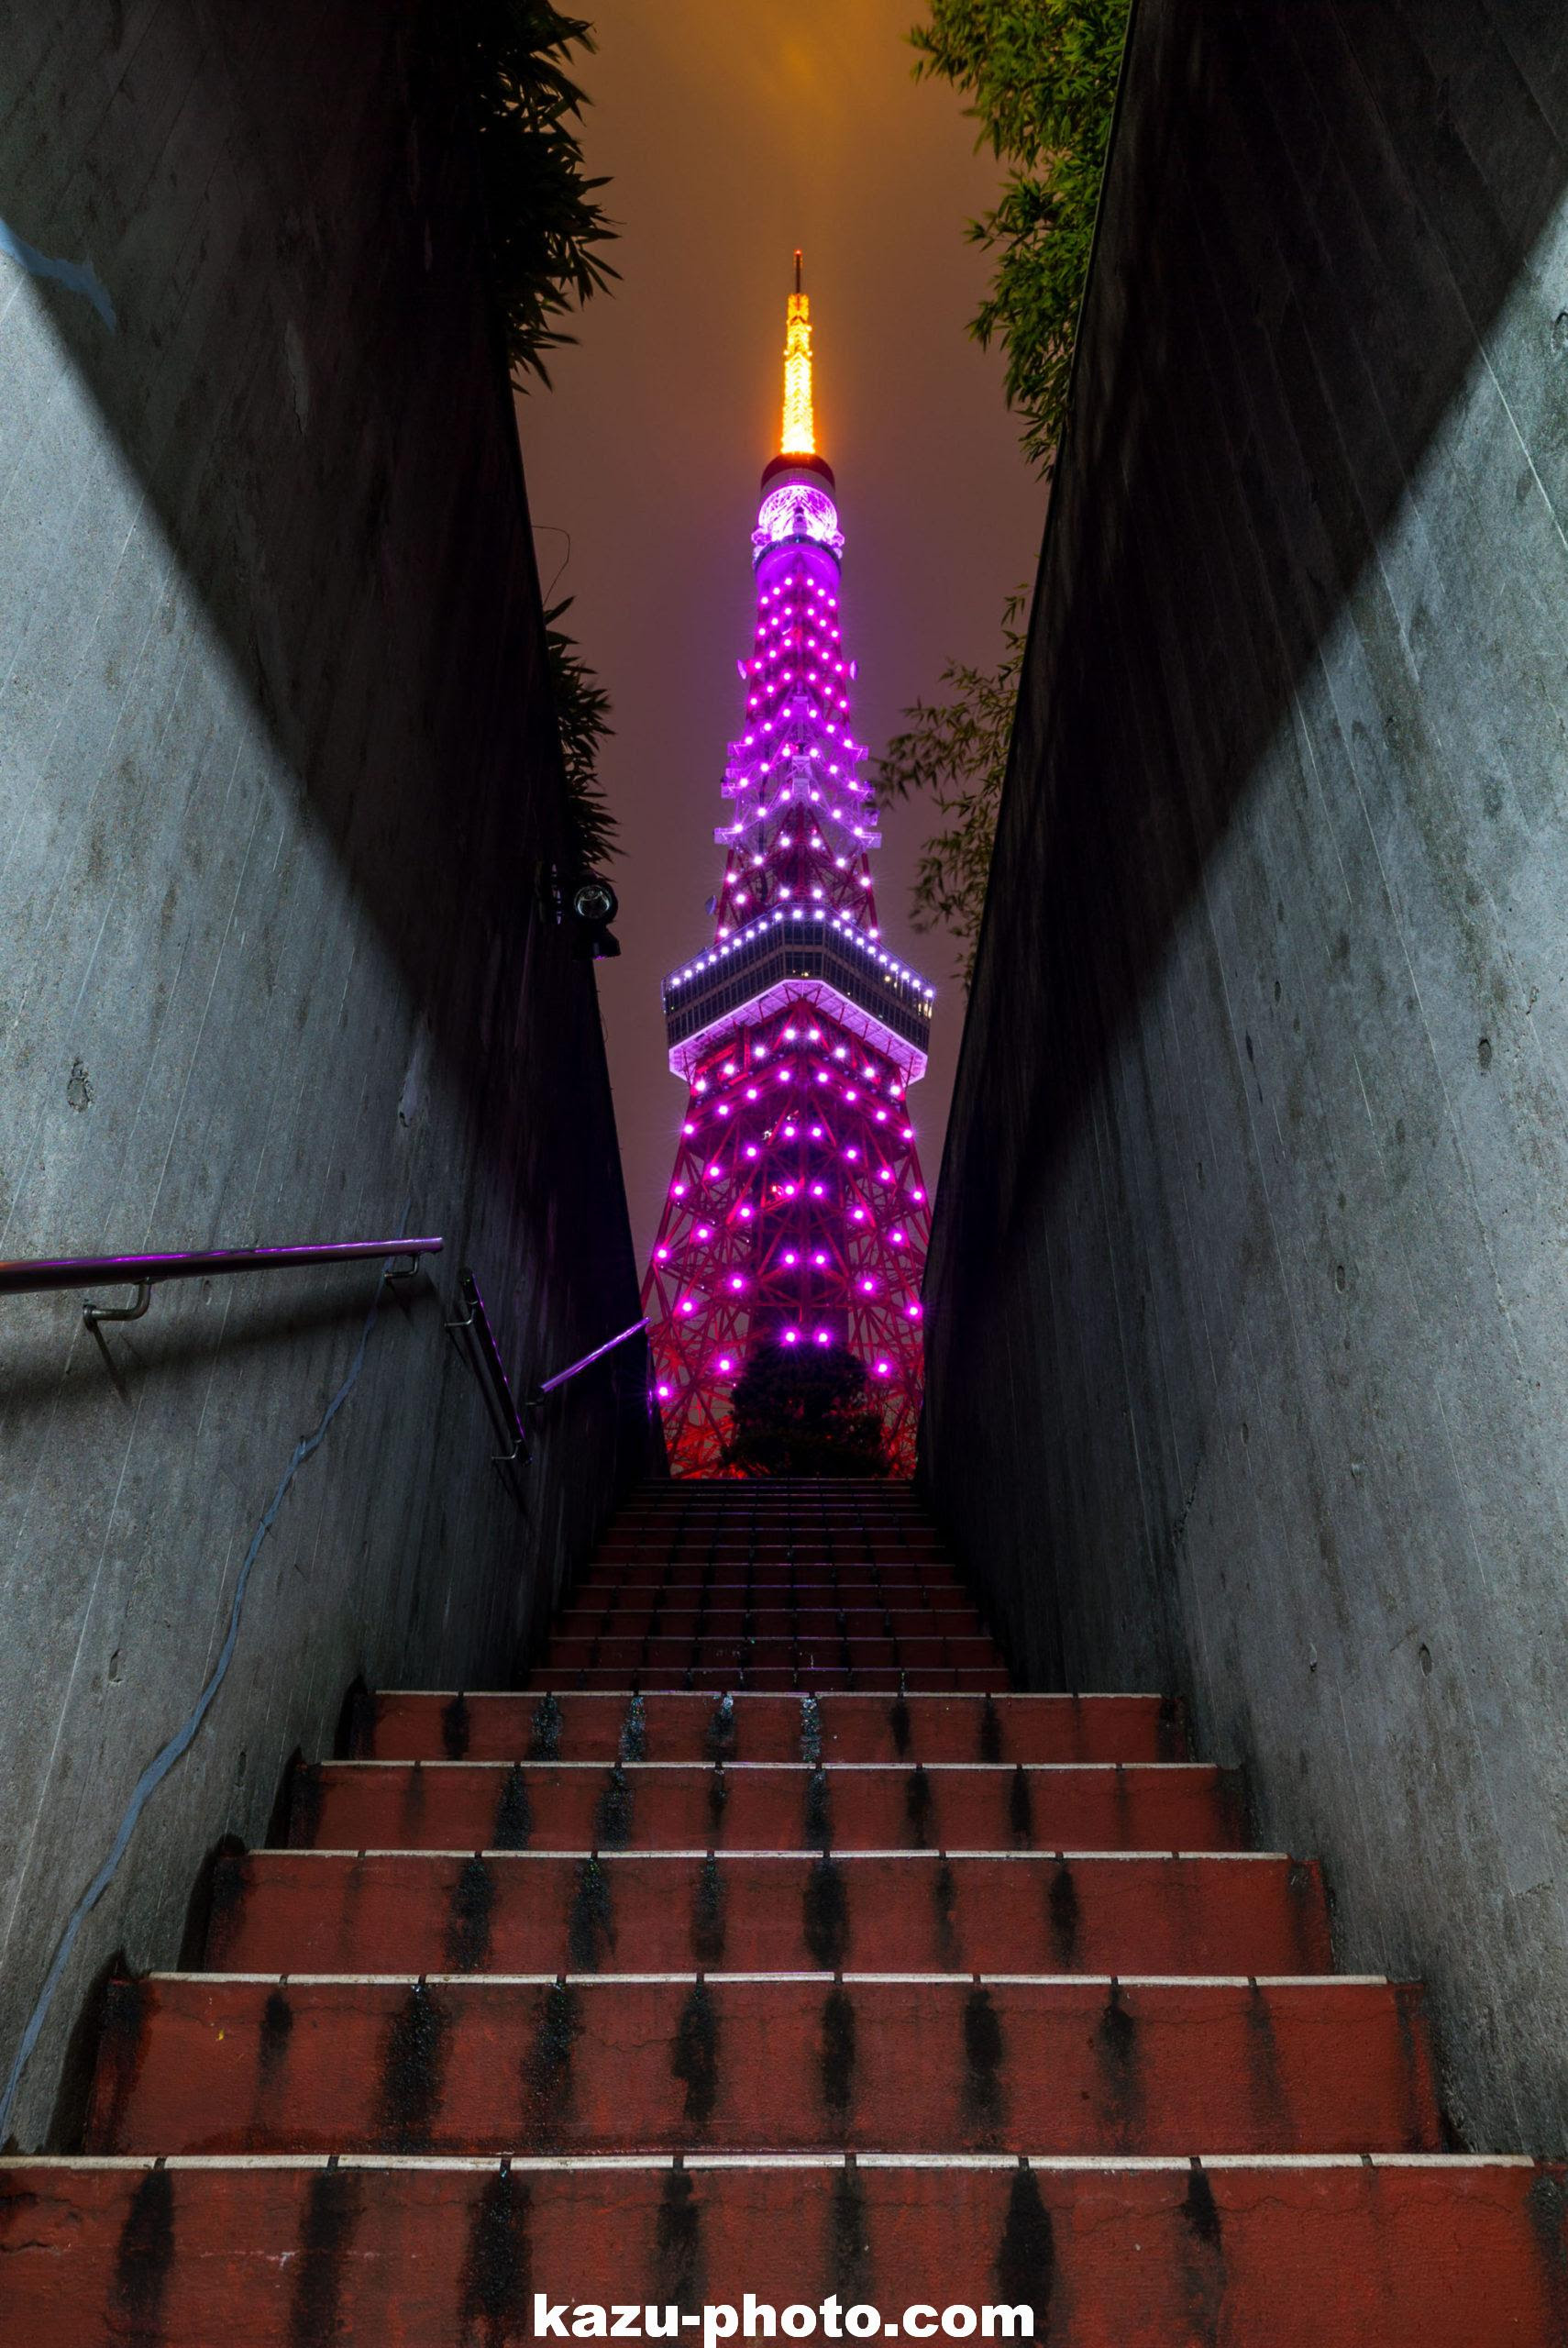 インスタ映えで人気の東京タワー撮影スポット 地下駐車場の階段 Aのevfが見せる世界